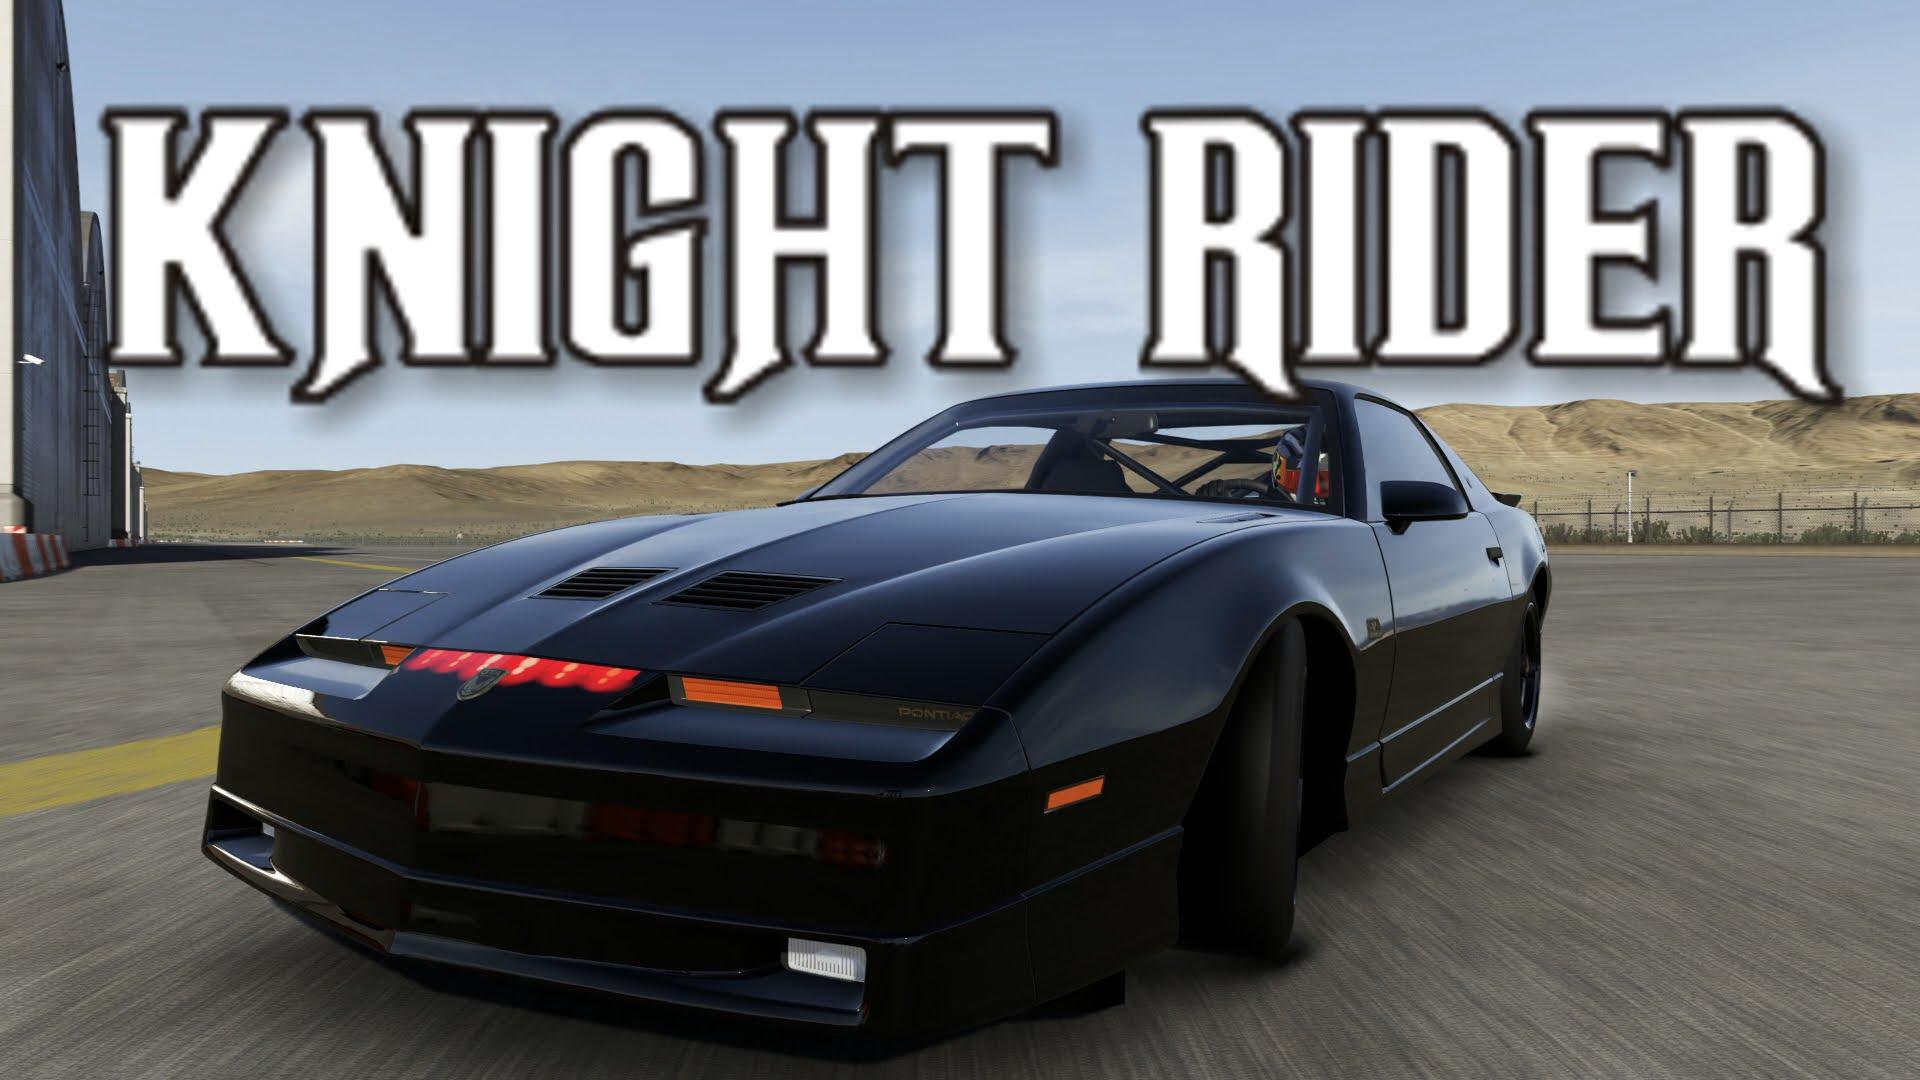 Knight Rider KITT. Forza 6 Movie Cars: Knight Rider